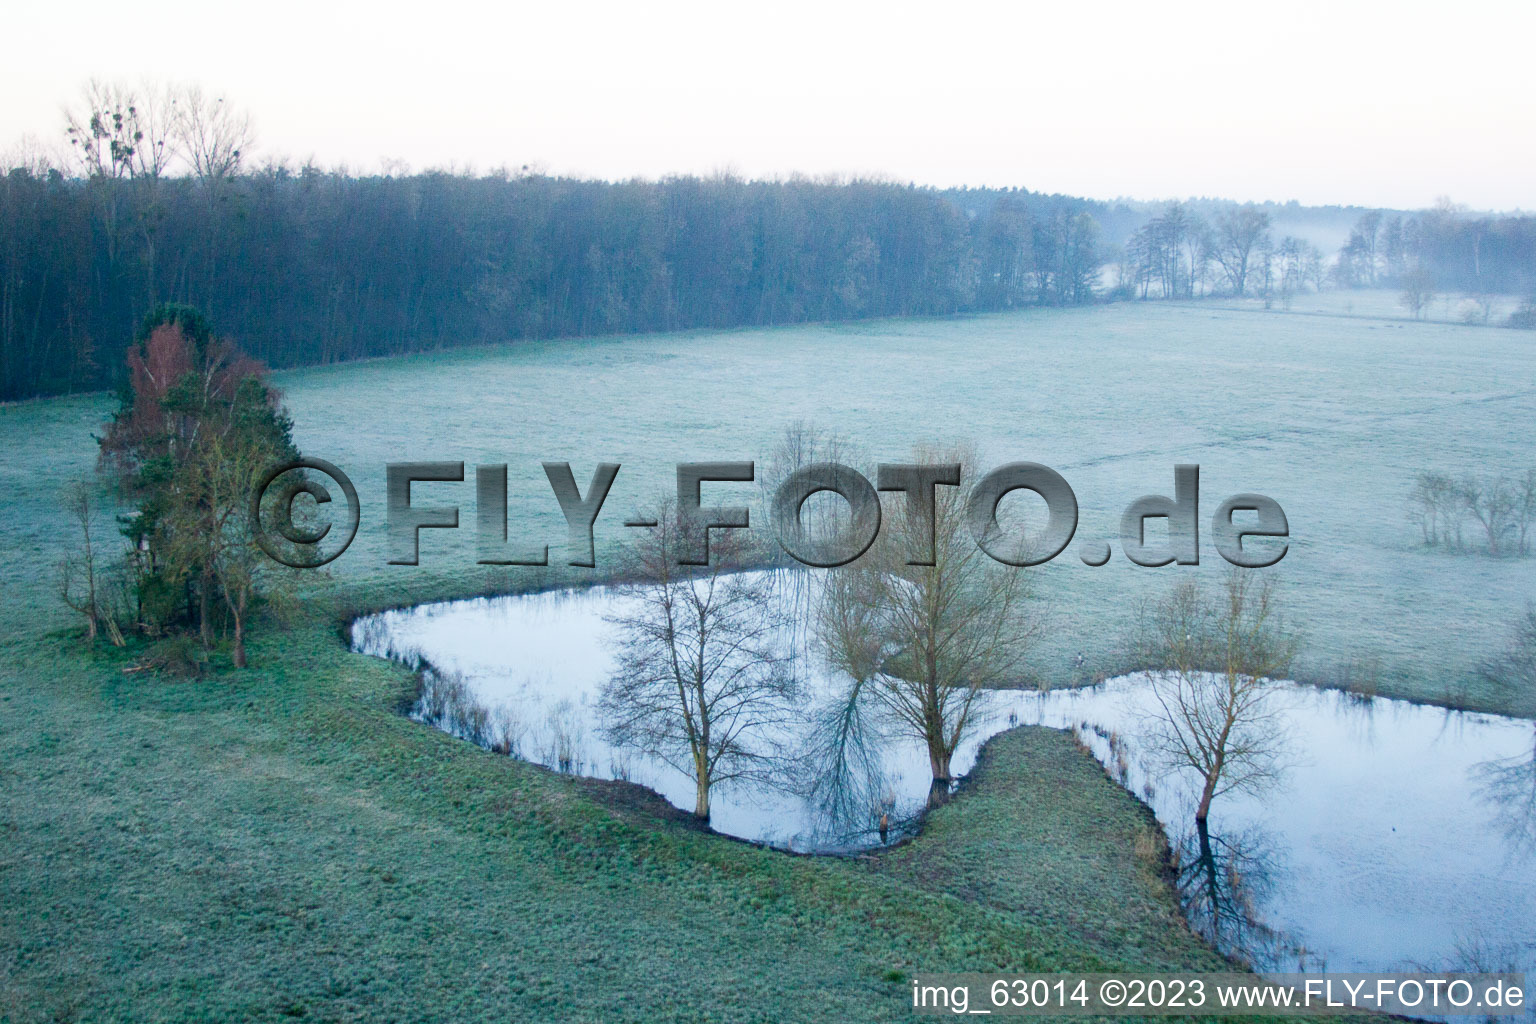 Vallée d'Otterbachtal à Minfeld dans le département Rhénanie-Palatinat, Allemagne hors des airs